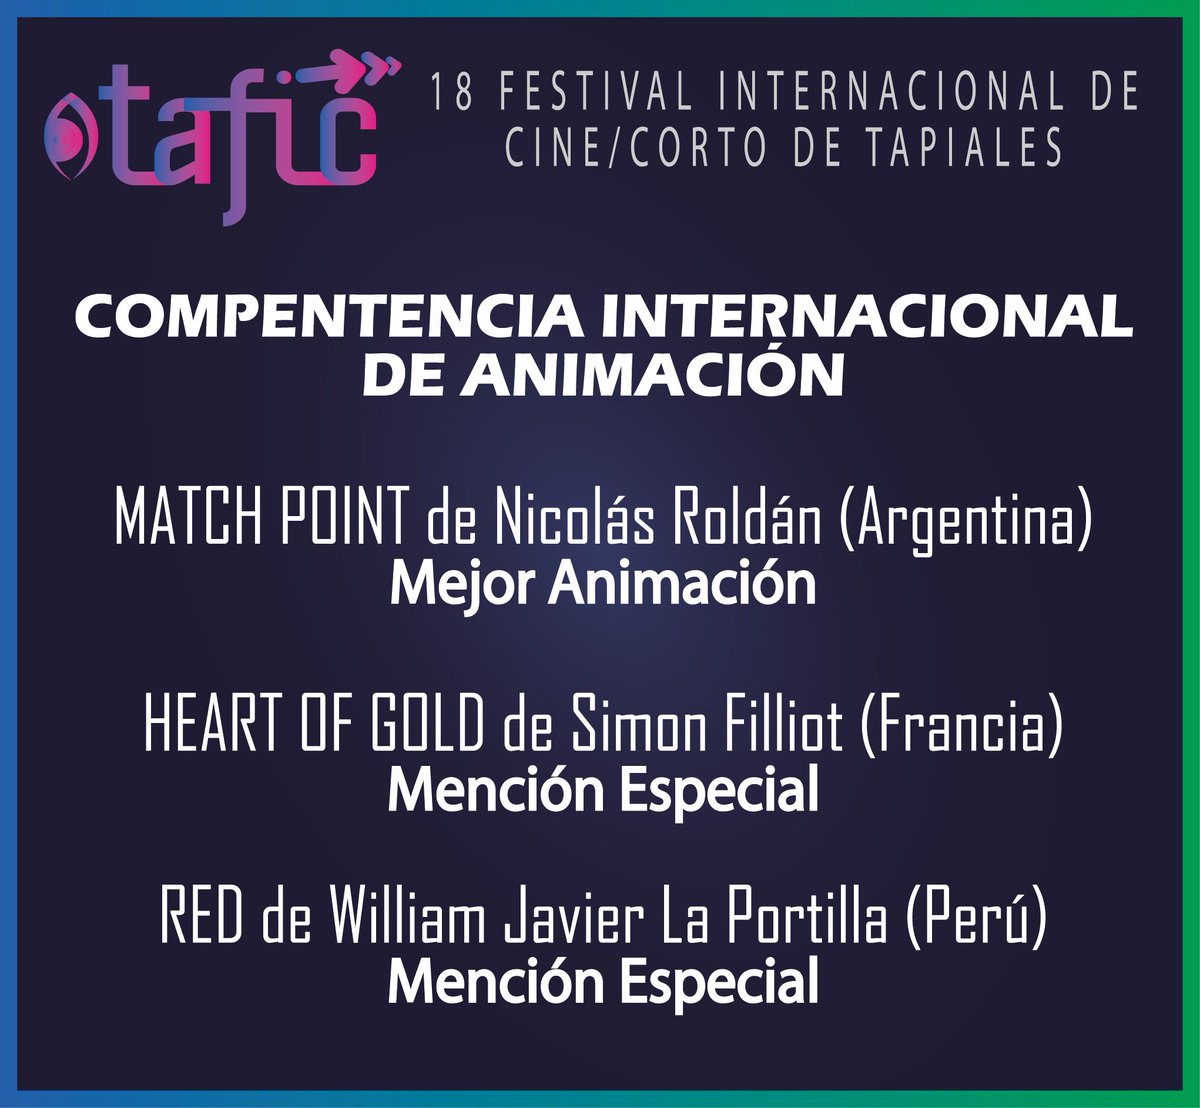 😍 Un Cœur d'Or de Simon Filliot nous revient ce week-end d'Argentine avec une belle Mention Spéciale au @FestTapiales de Buenos Aires!! ¡Muchas gracias! 💛💛💛